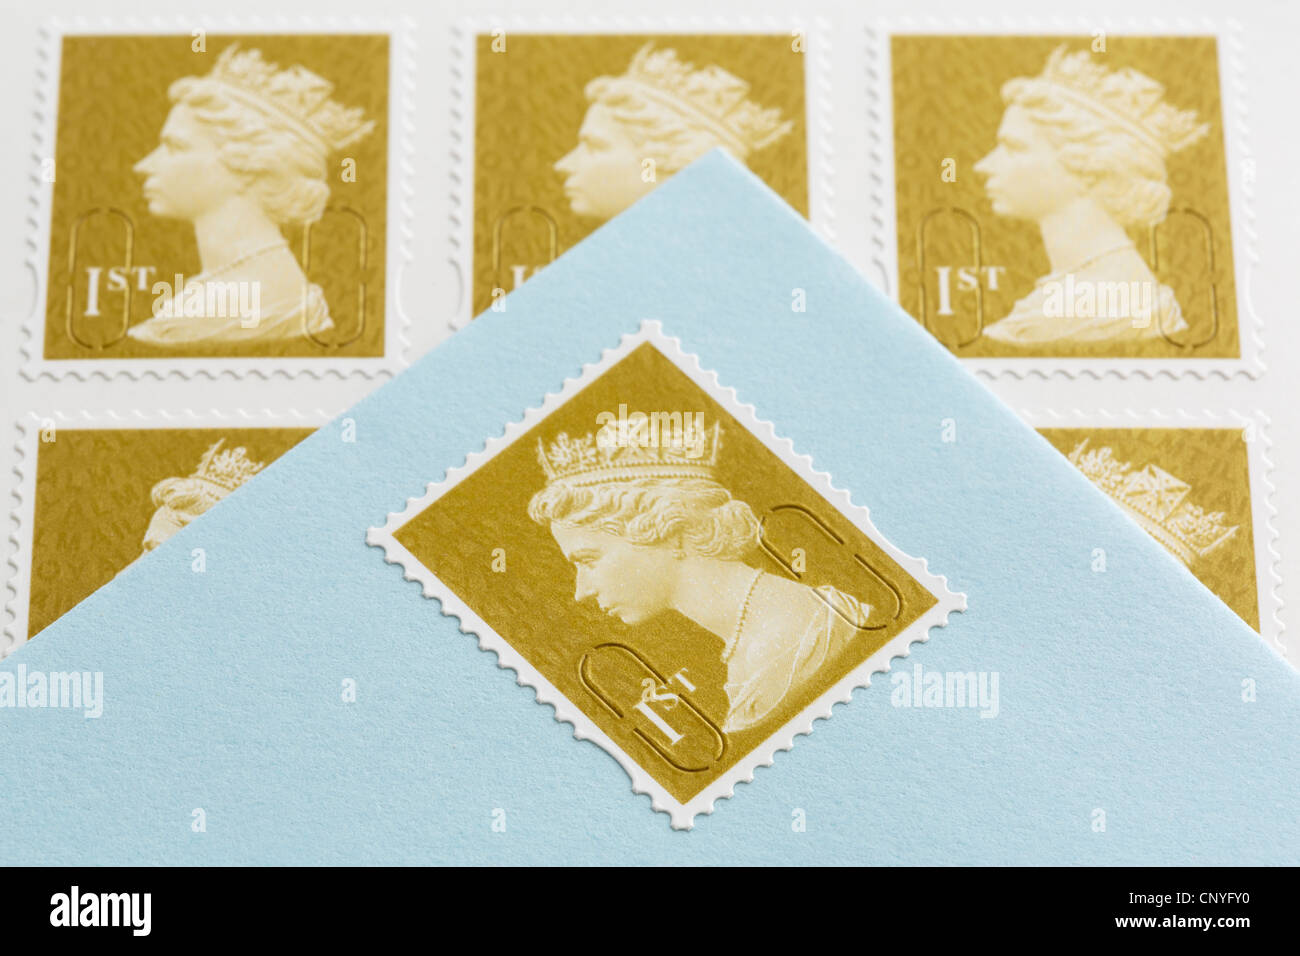 UK, Großbritannien. Royal Mail erster Klasse Briefmarken und einen Umschlag mit einer Briefmarke aufgeklebt Stockfoto